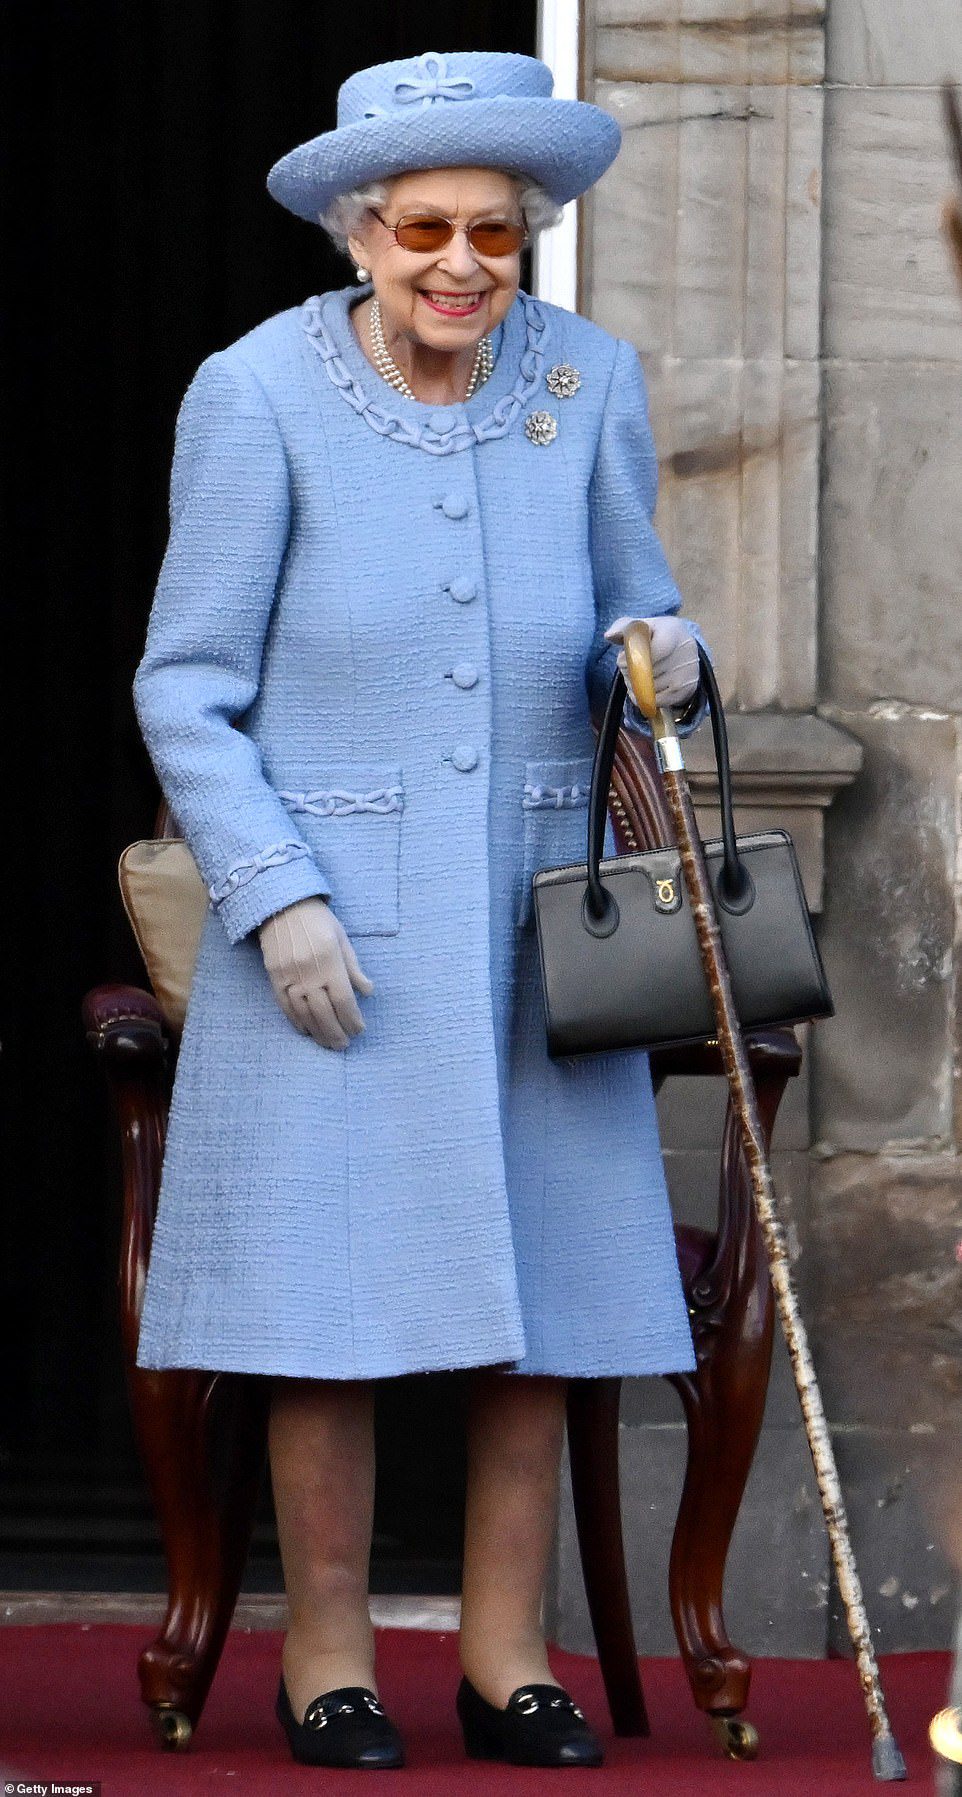 Azul radiante!  A Rainha é toda sorrisos enquanto assiste à Royal Company of Archers Reddendo Parade nos jardins do Palácio de Holyroodhouse